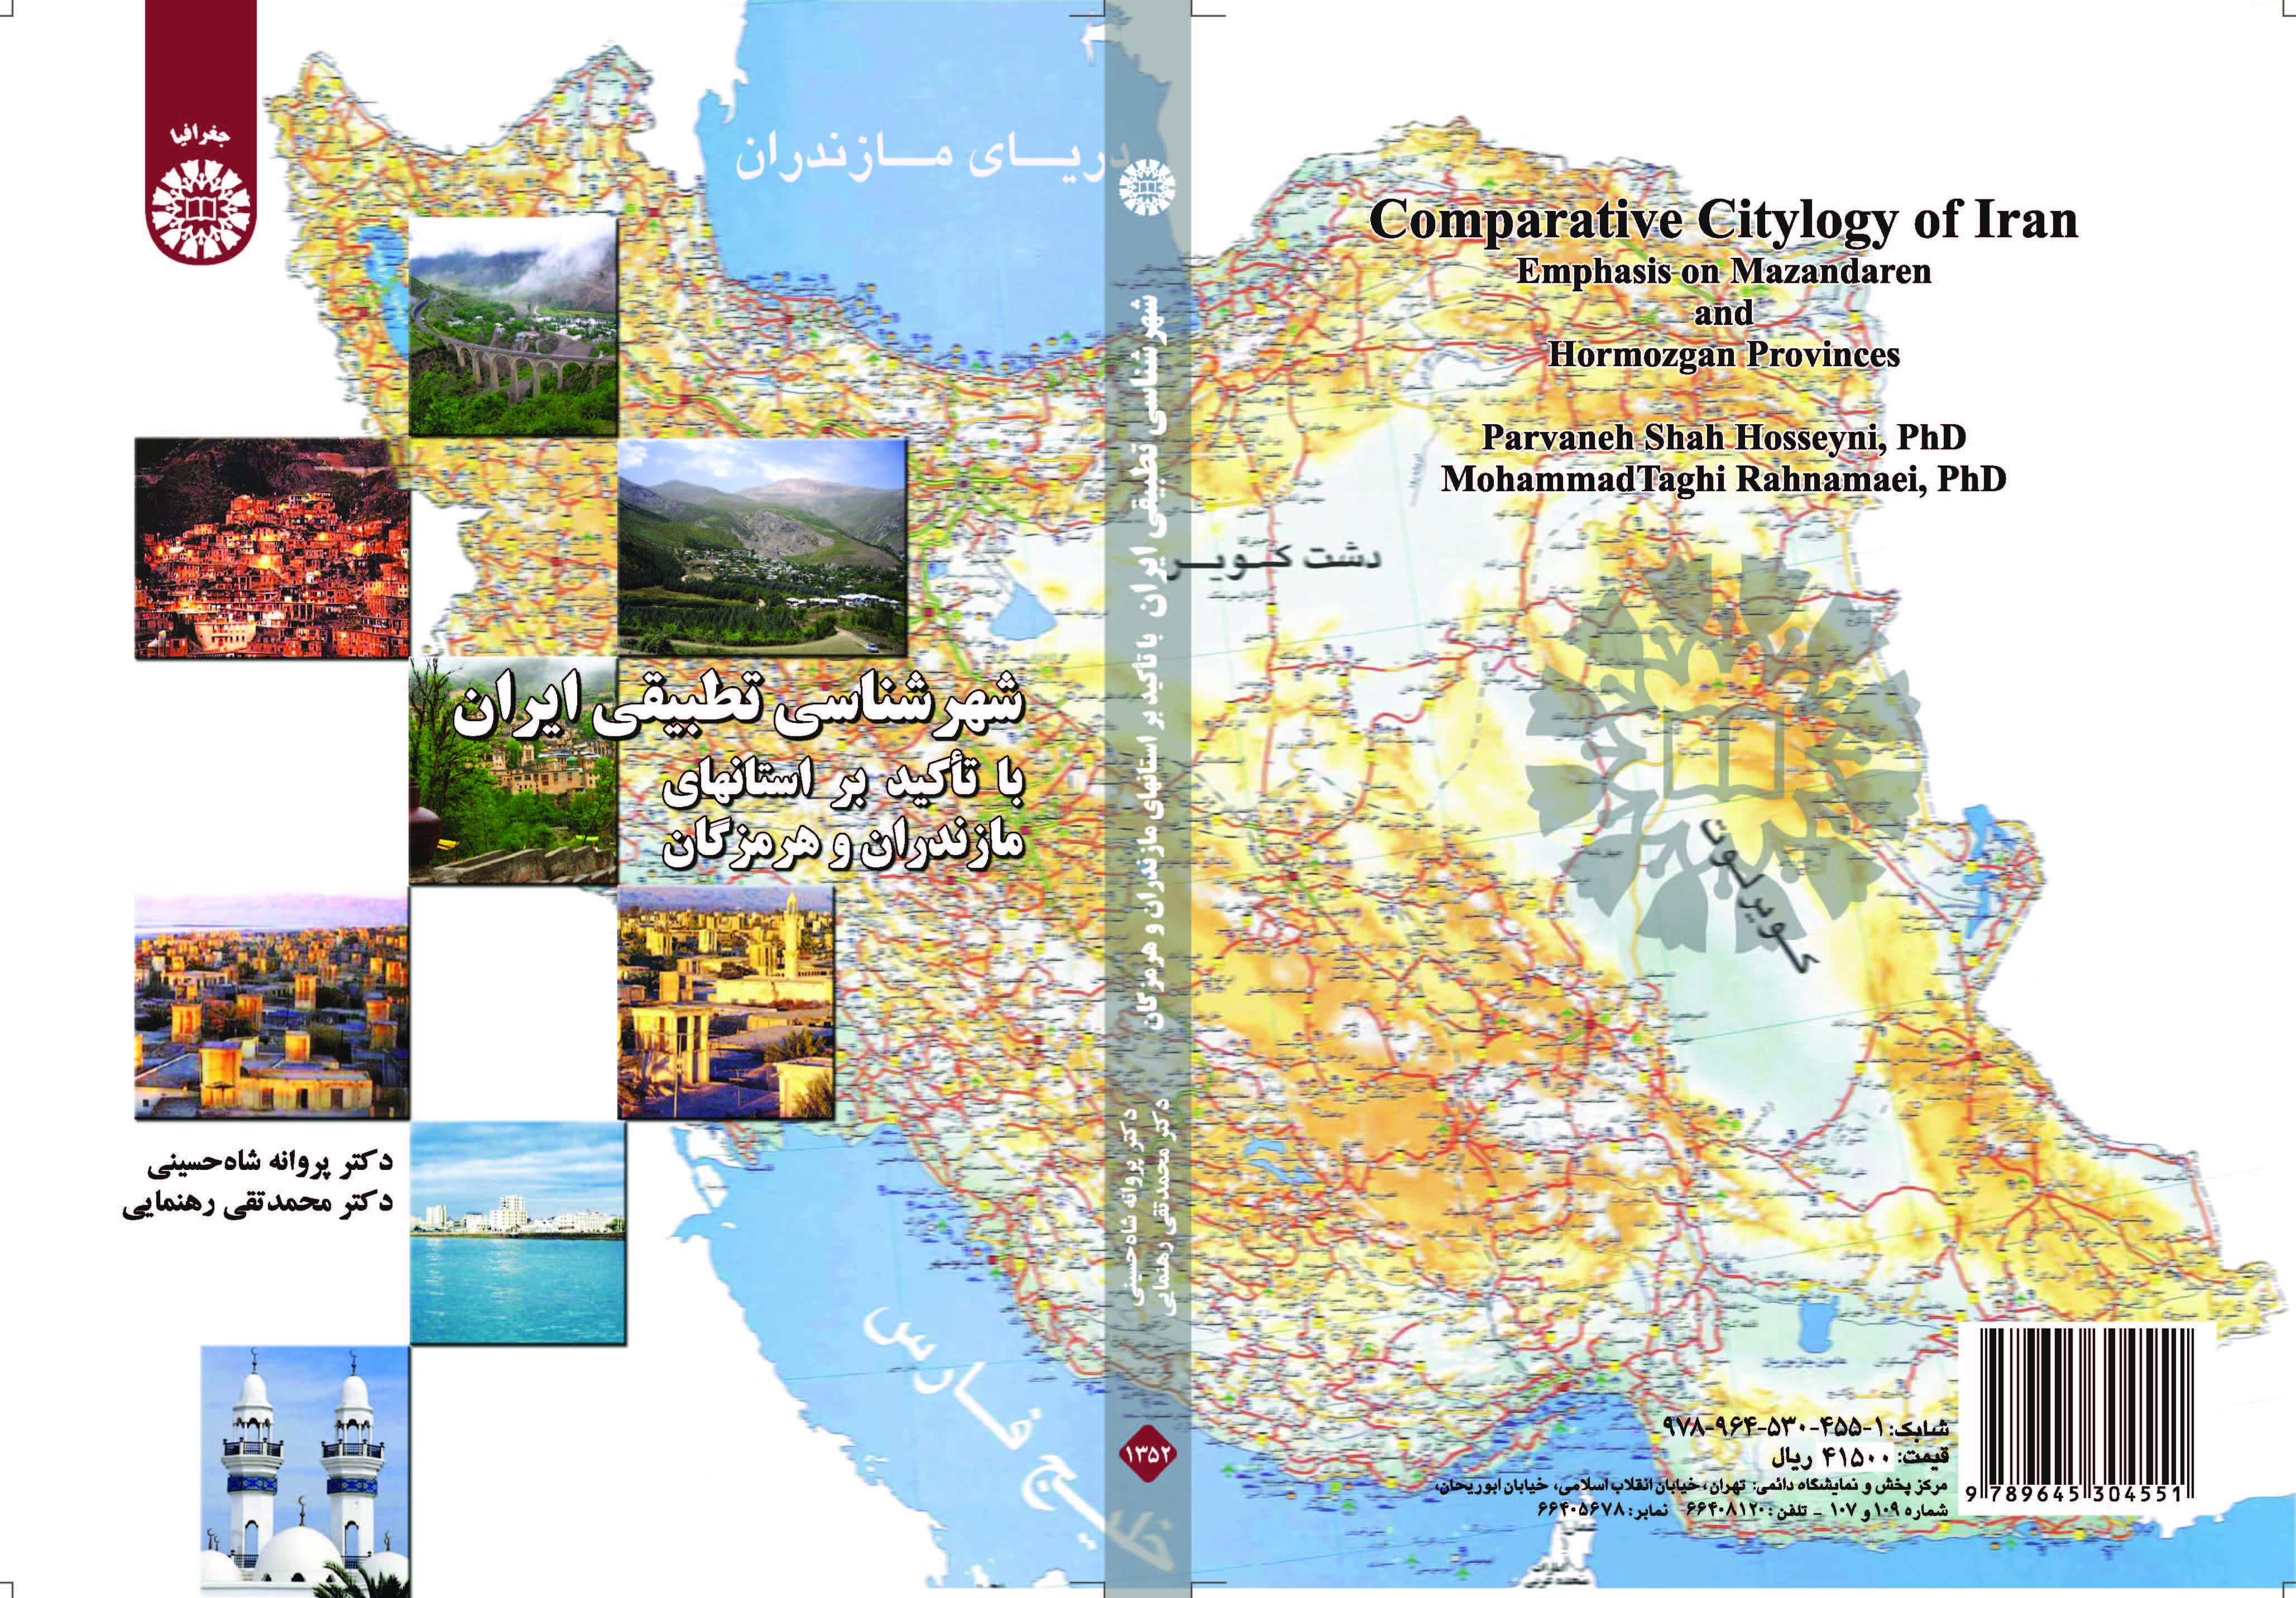 التخطيط الحضري في المدن الإيرانية بالتركيز على محافظتي مازندران وهرمزكان: دراسة مقارنة